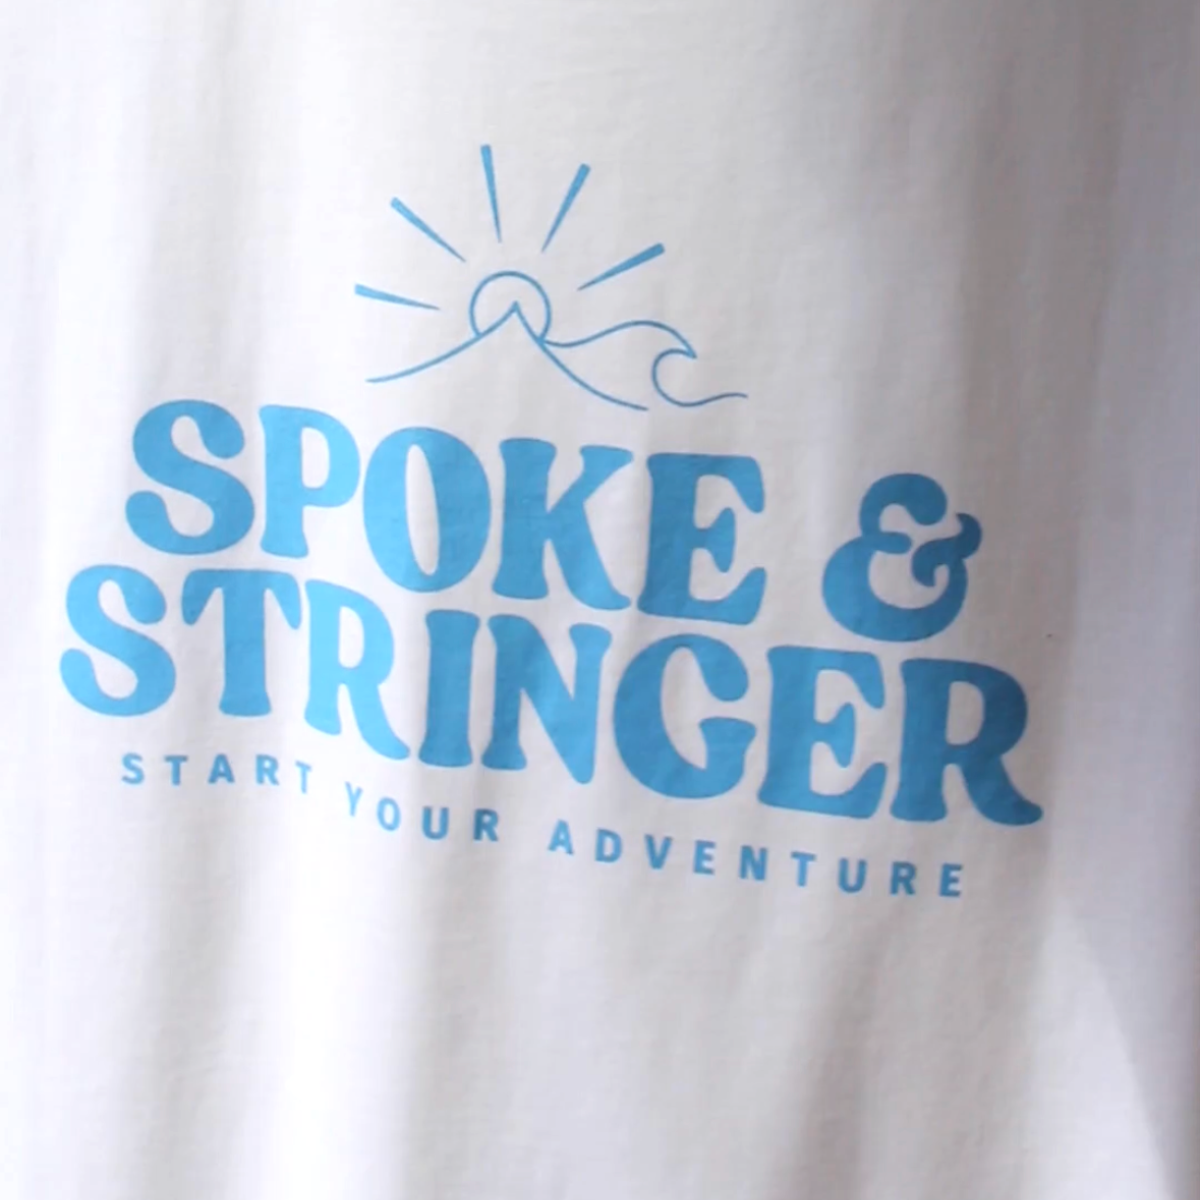 Spoke & Stringer